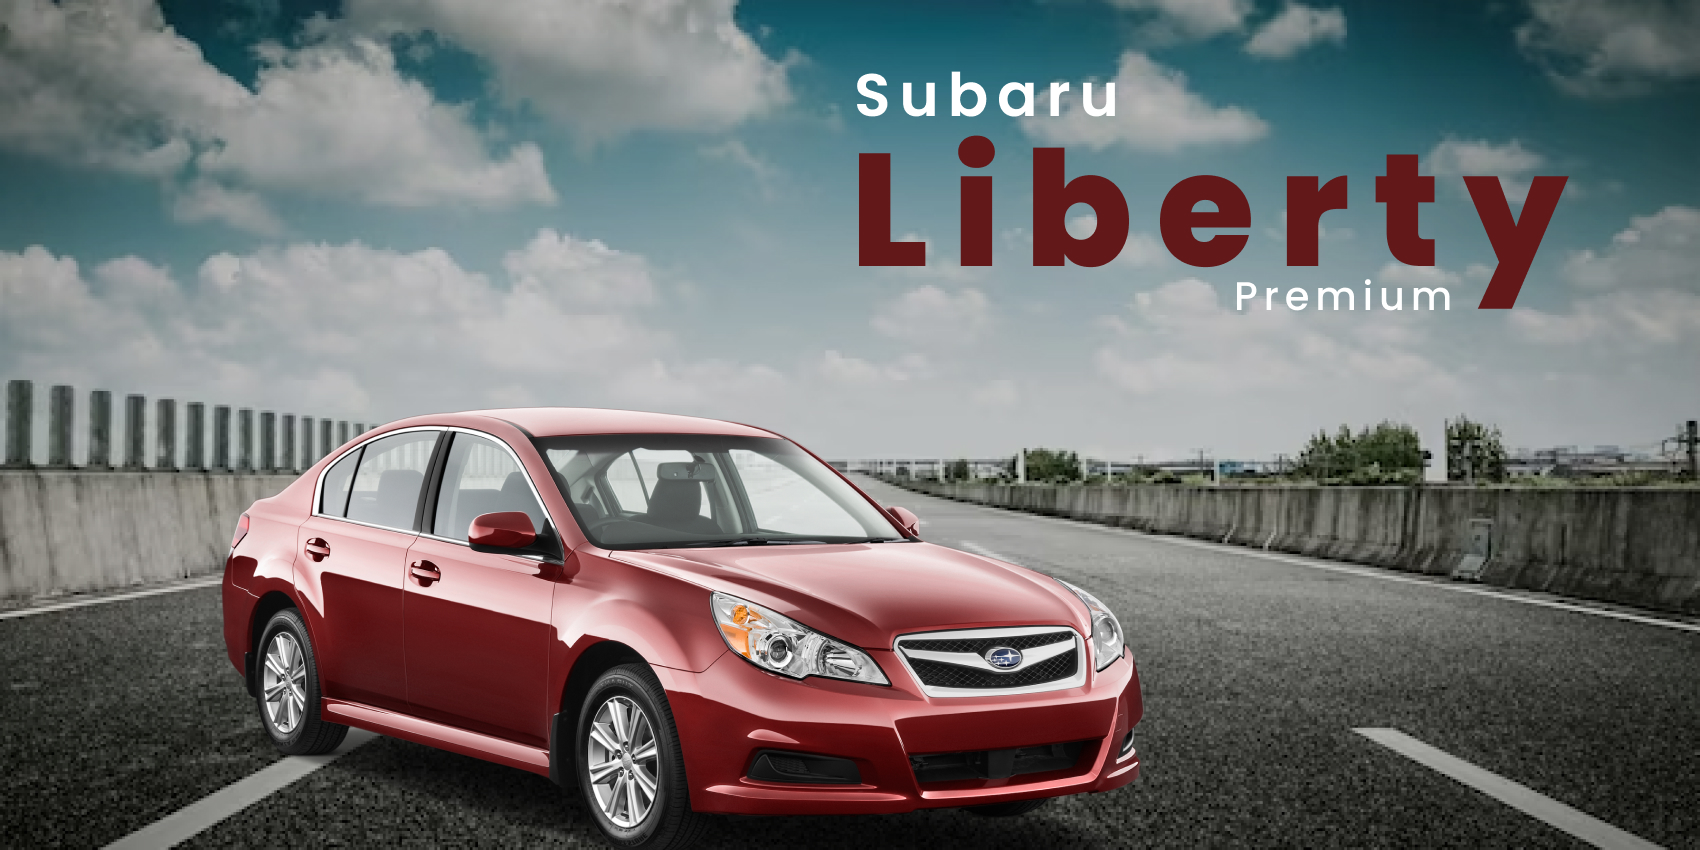 Subaru Liberty Premium